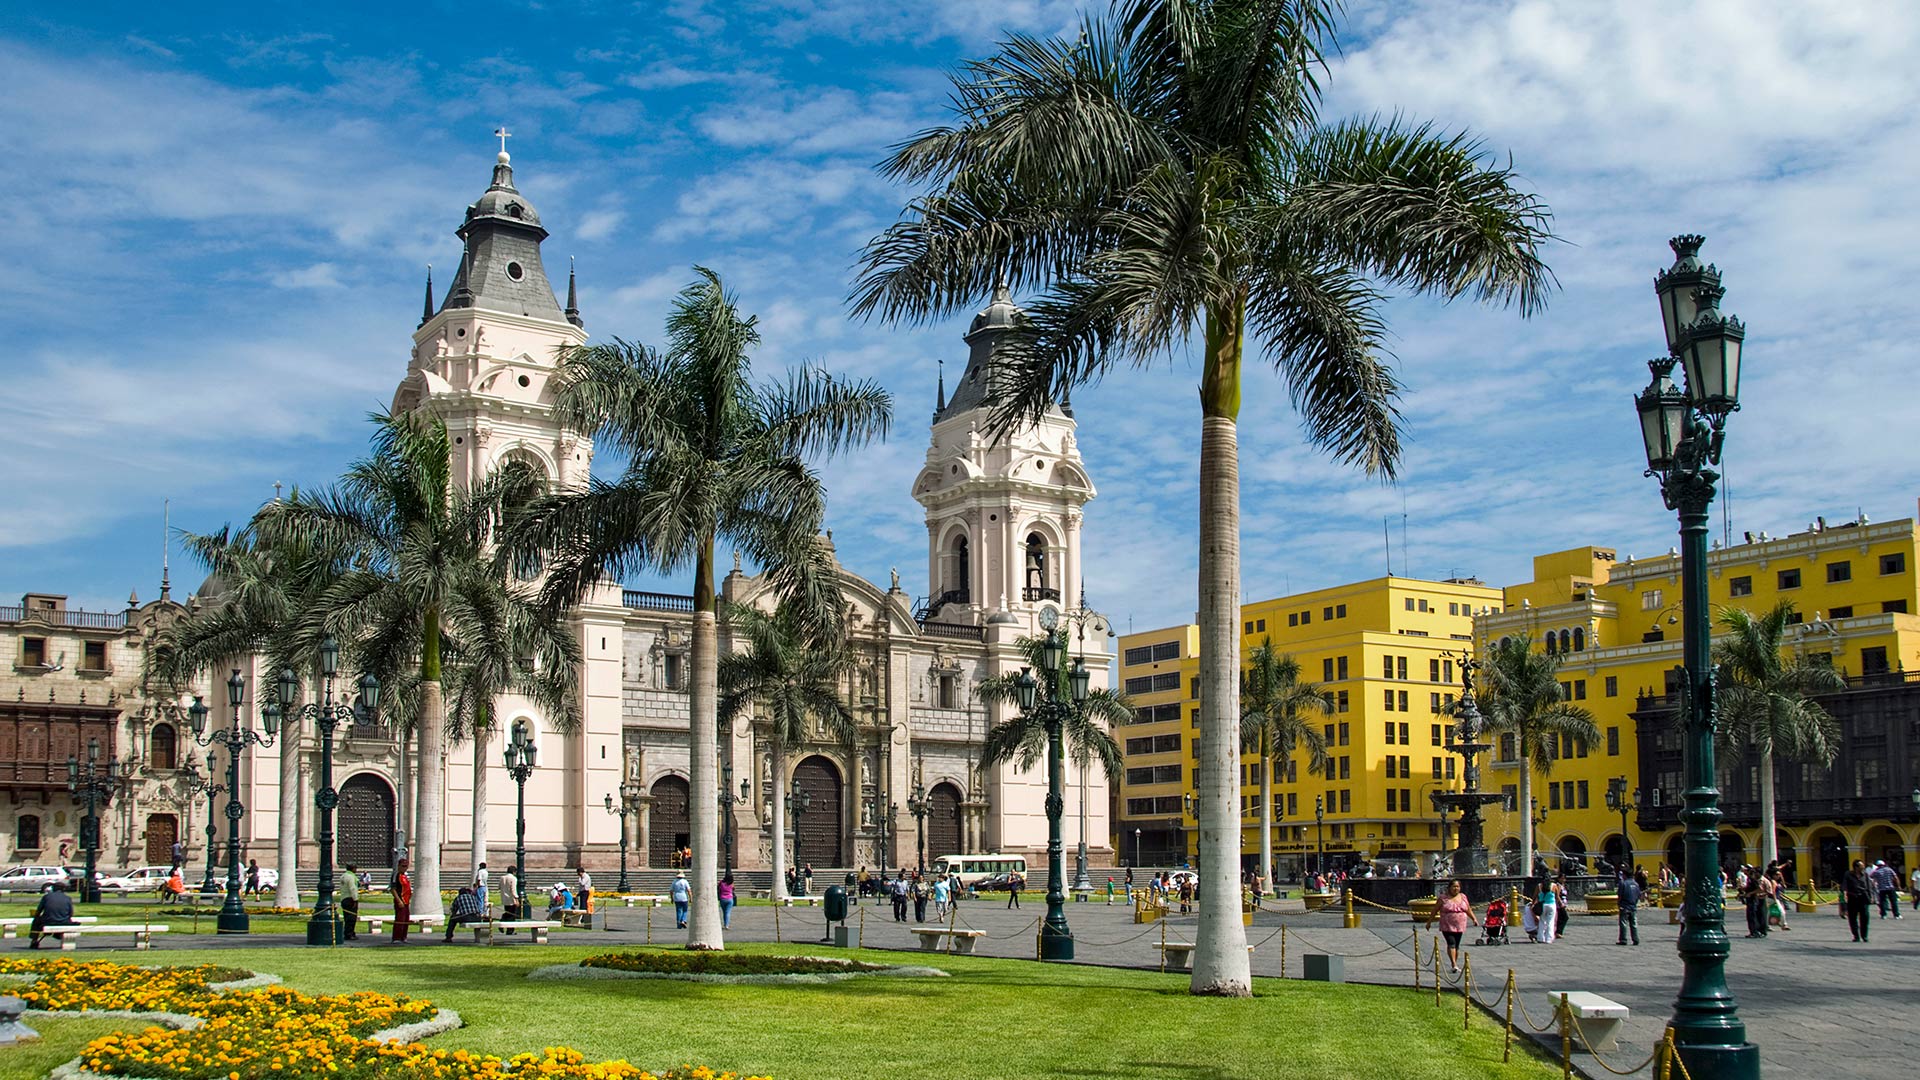 The historic Plaza de Armas in Lima, Peru